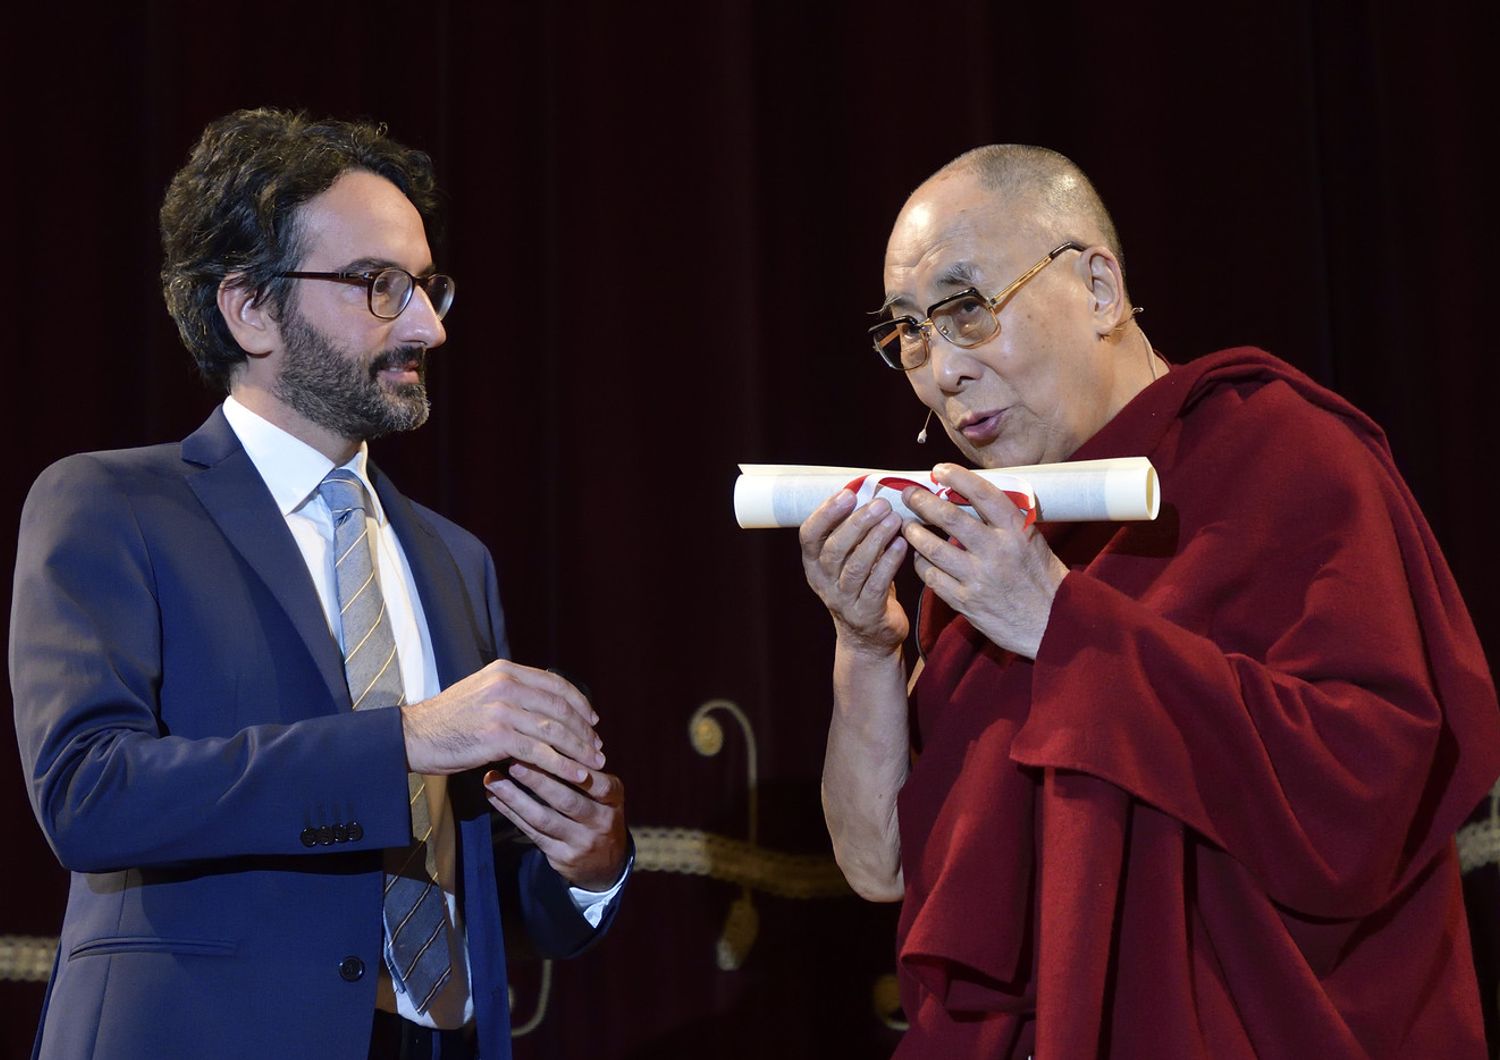 conferimento della cittadinanza onoraria del comune di Milano al Dalai Lama (Agf)